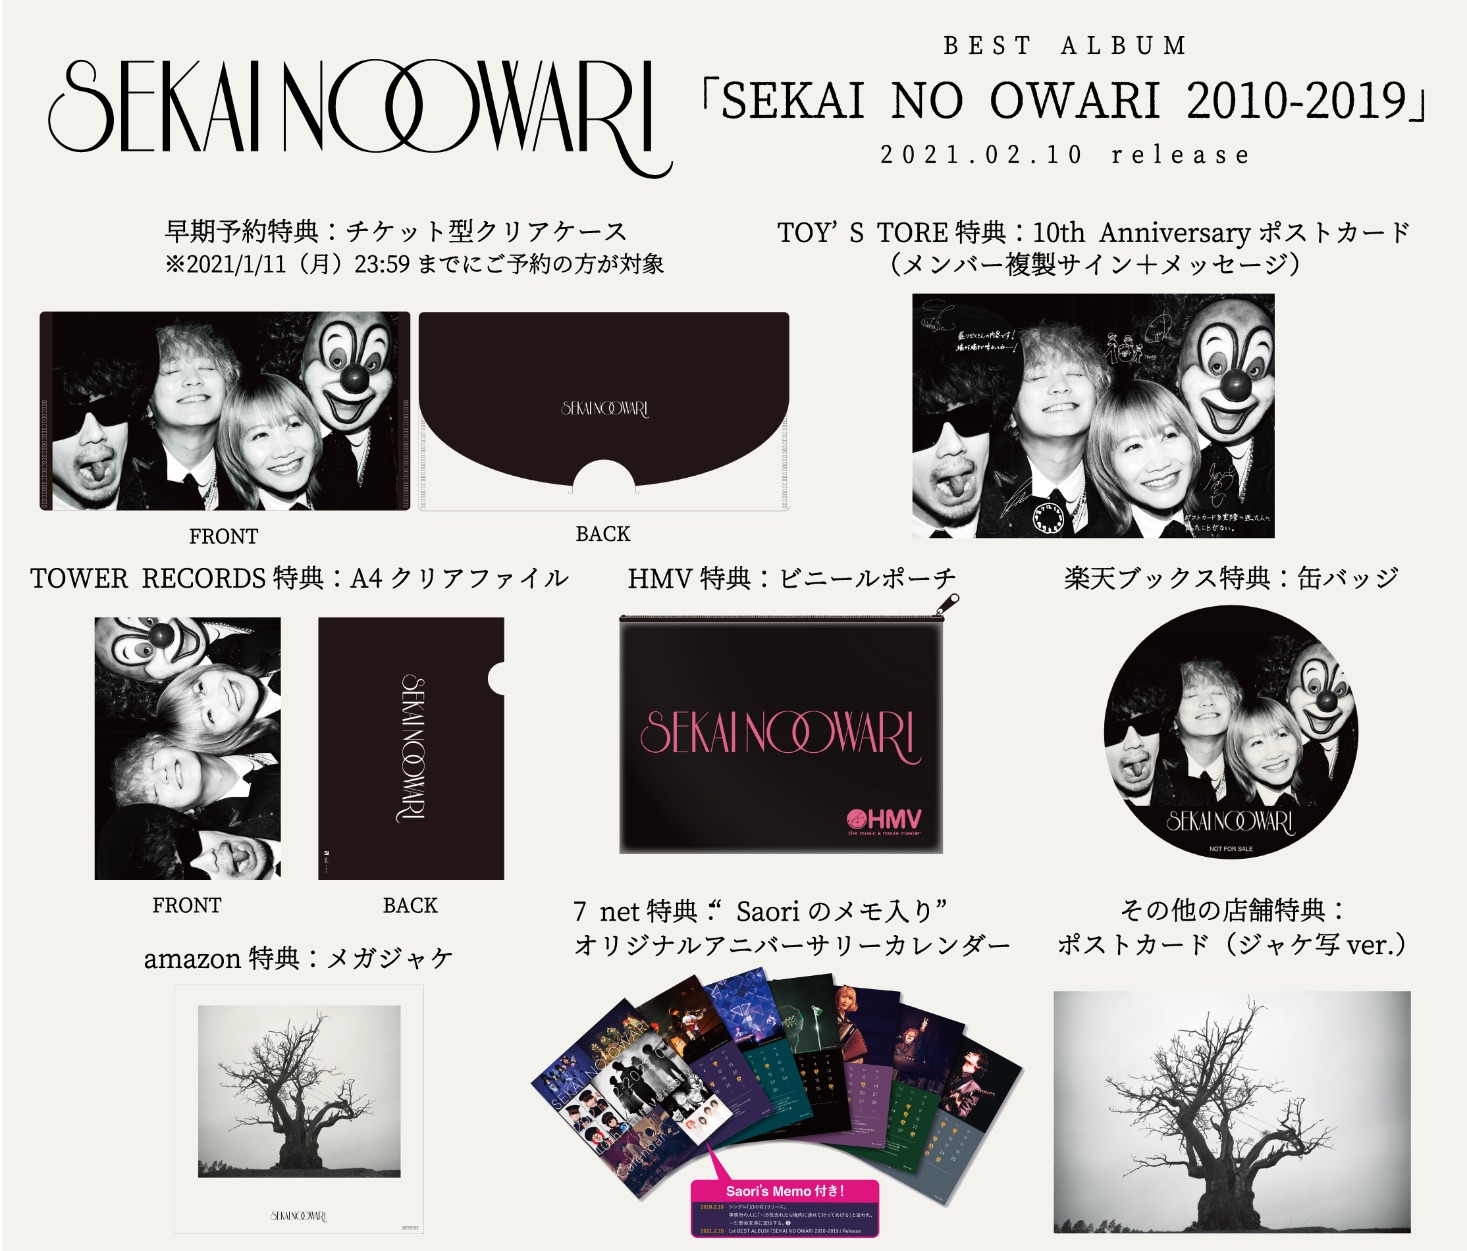 SEKAI NO OWARI Announce the Release of 'Chameleon' Album as End of 